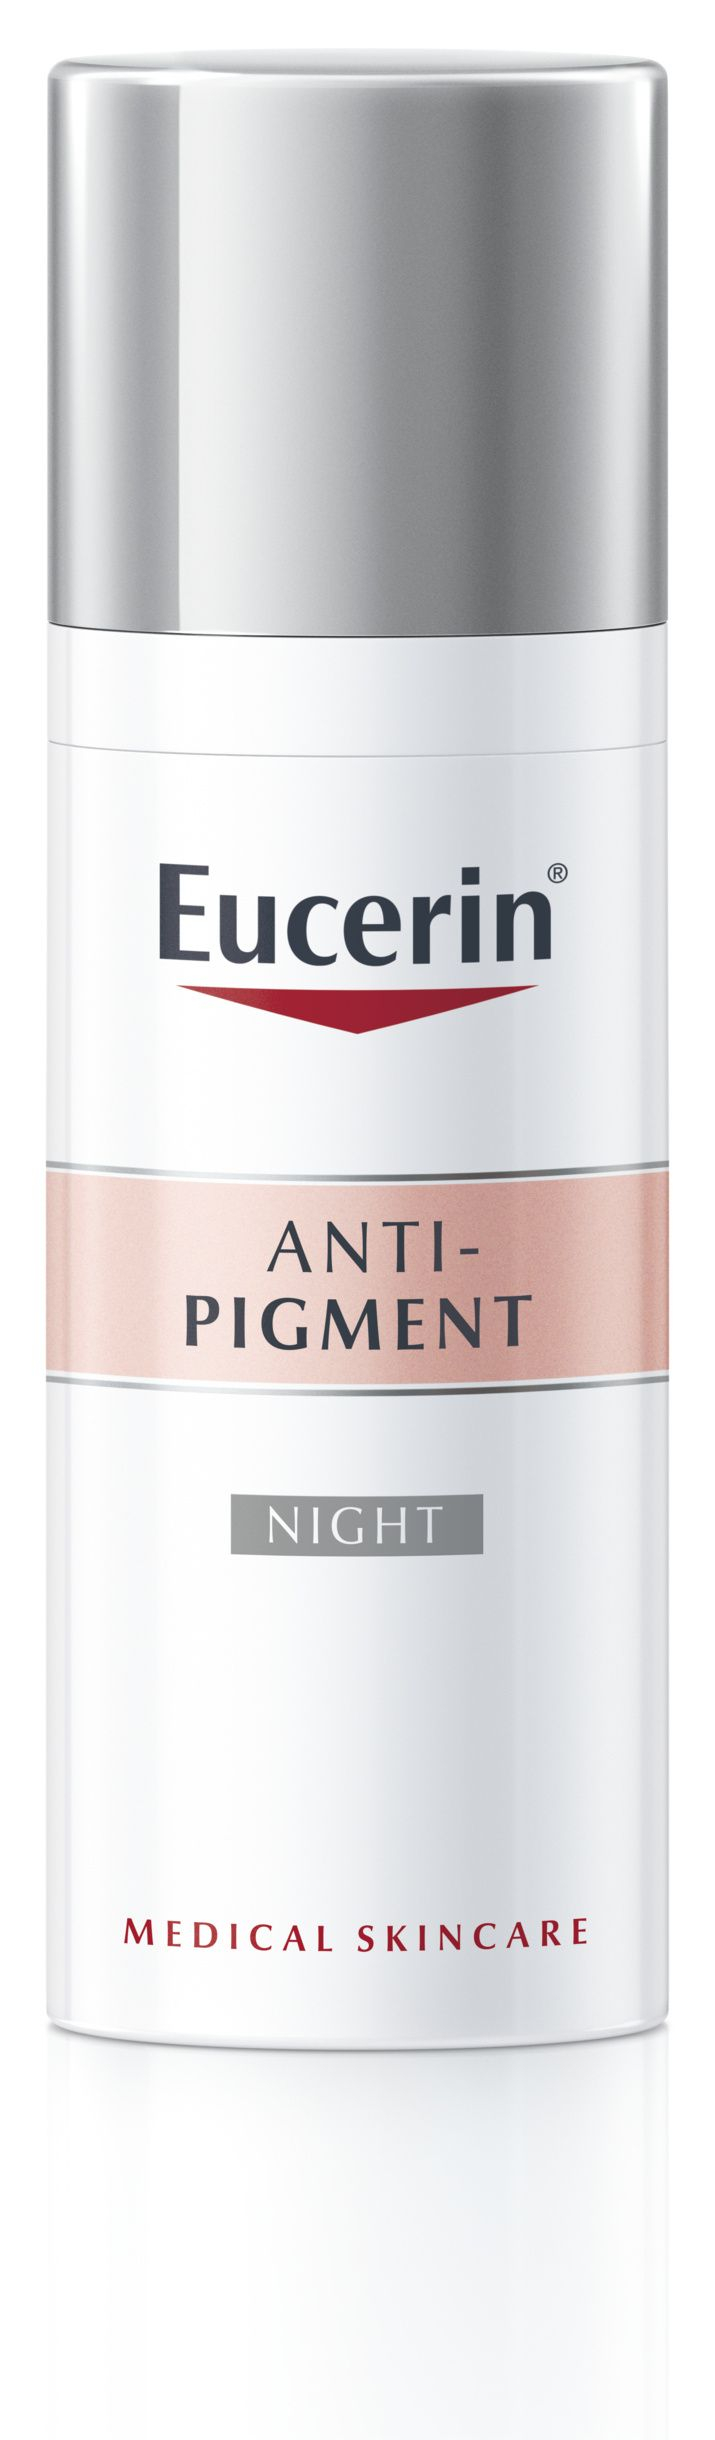 Eucerin AntiPigment noční krém 50 ml Eucerin